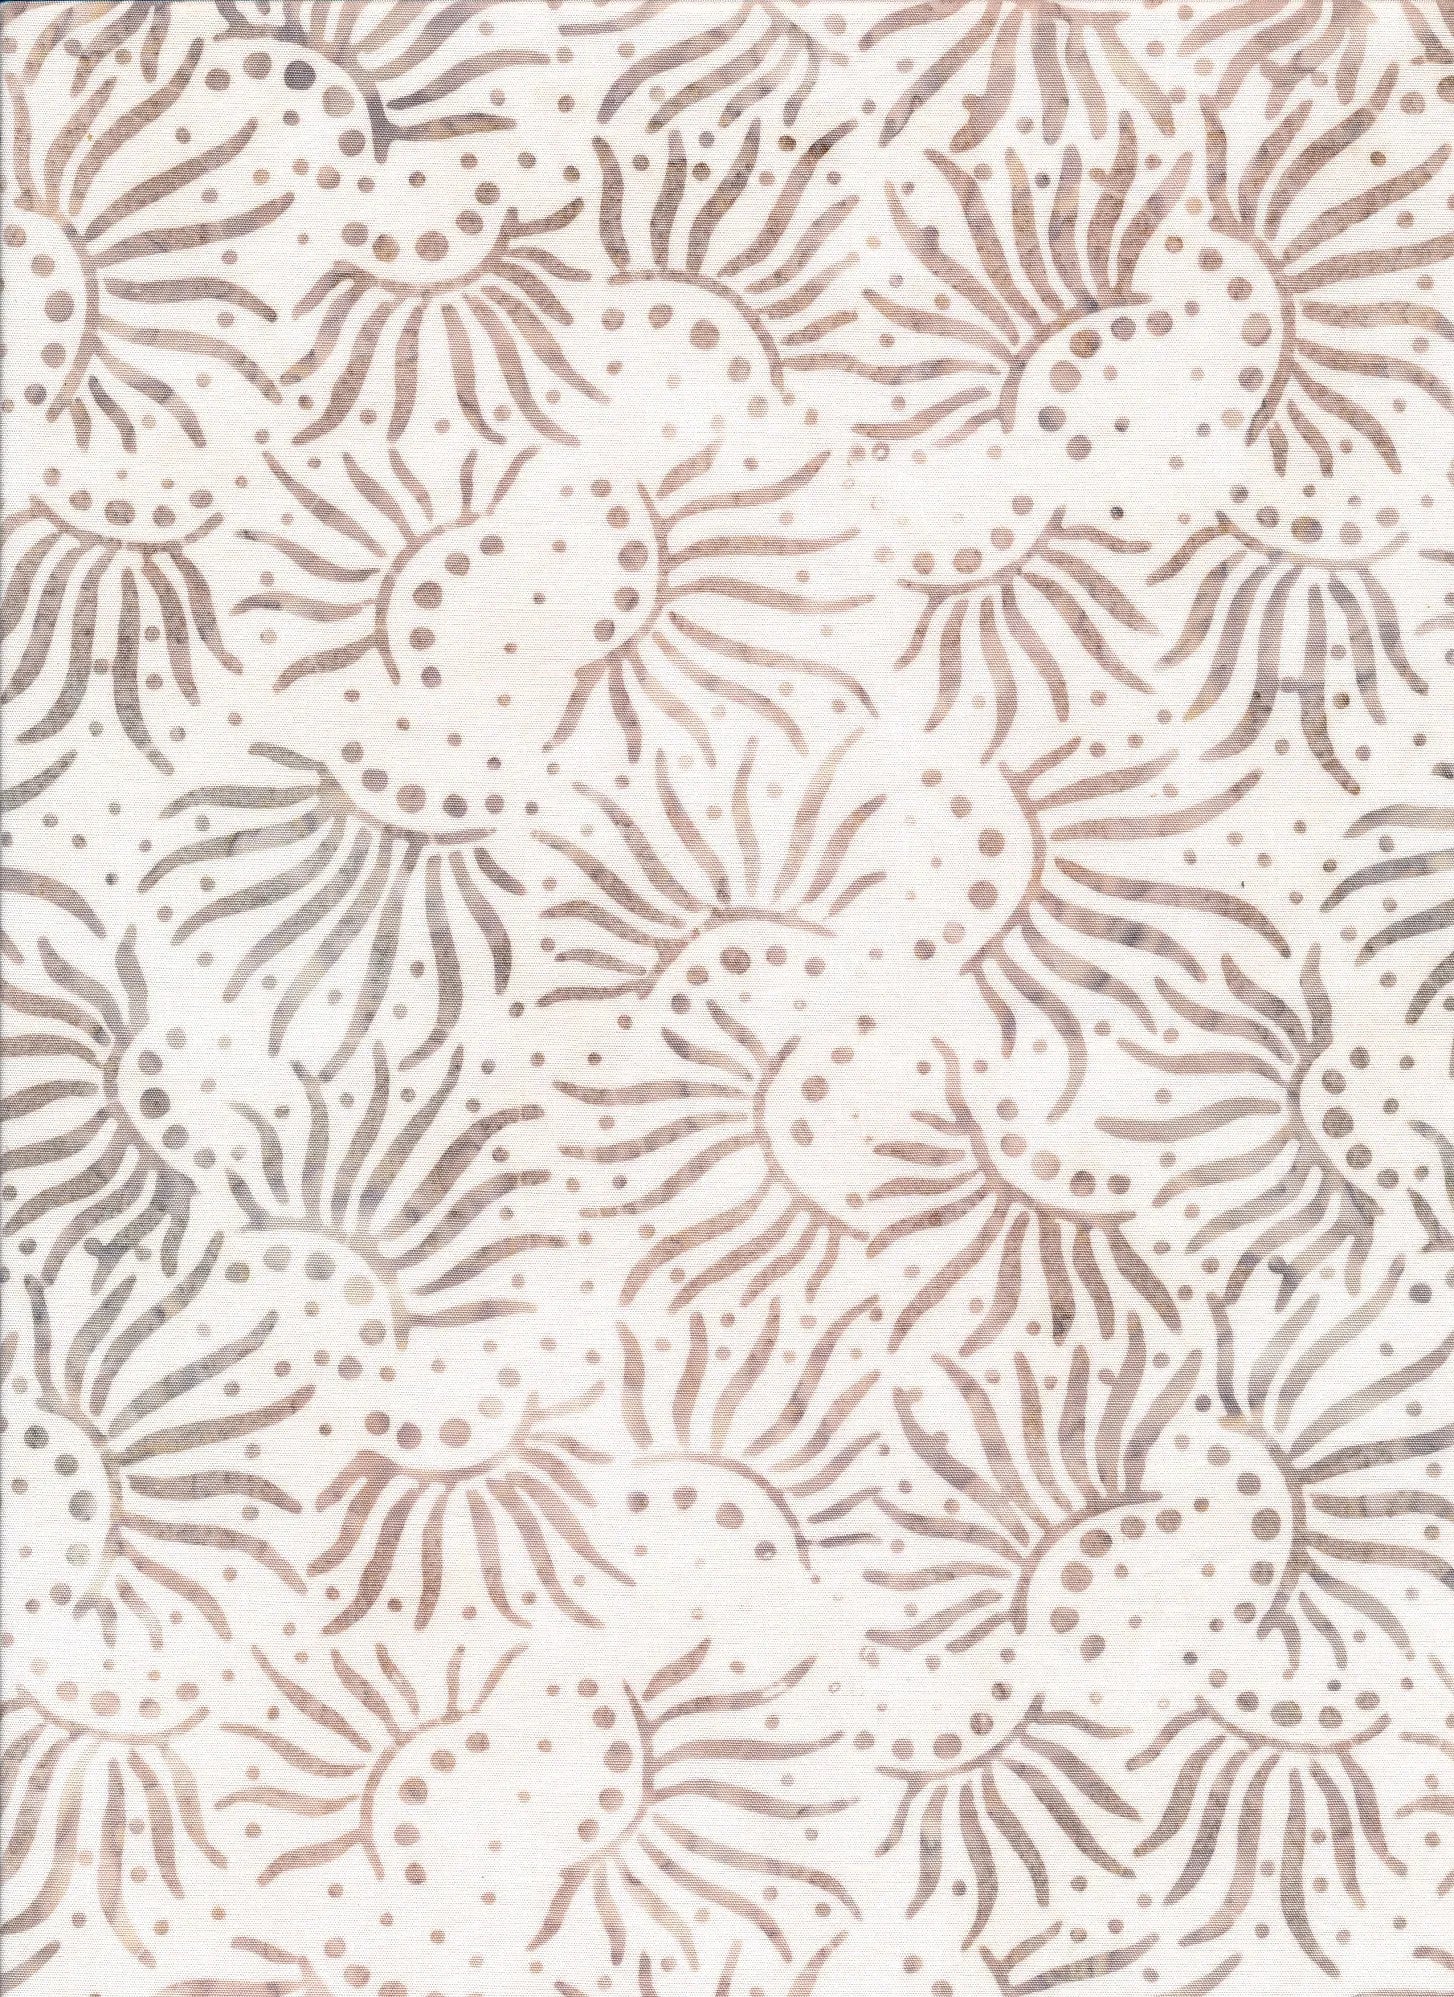 Majestic Batiks Quilt Fabric - Hazel Sunbeams in Cream/Tan - HAZEL 200